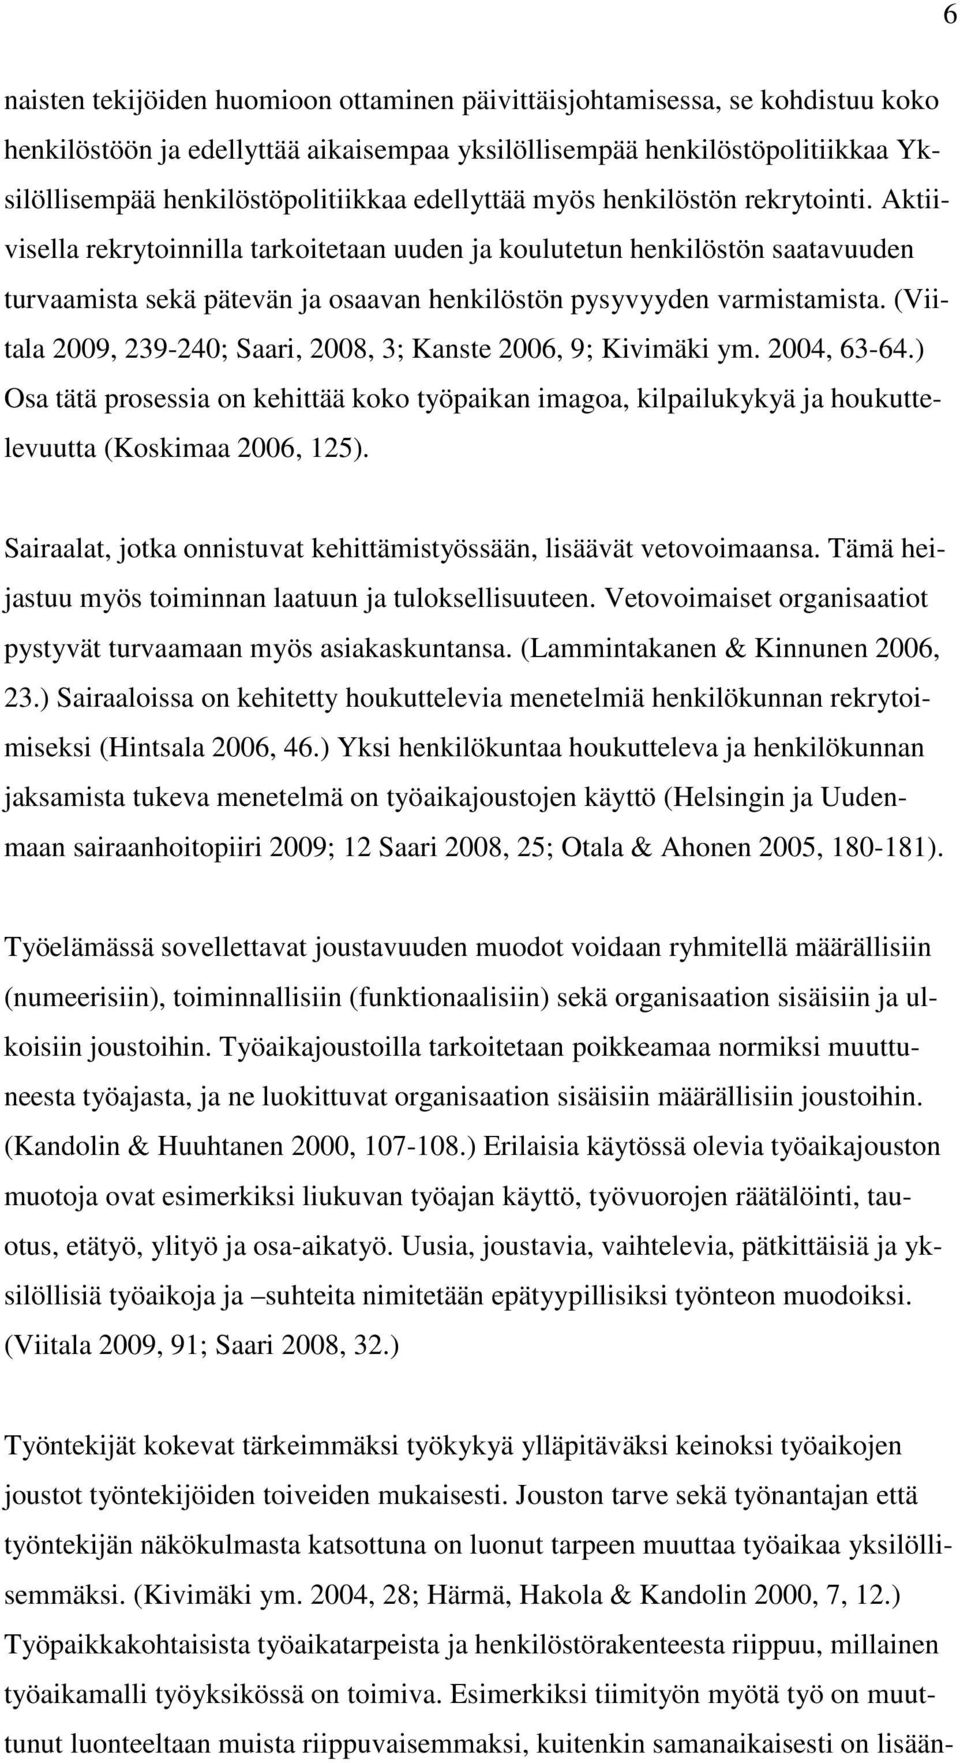 (Viitala 2009, 239-240; Saari, 2008, 3; Kanste 2006, 9; Kivimäki ym. 2004, 63-64.) Osa tätä prosessia on kehittää koko työpaikan imagoa, kilpailukykyä ja houkuttelevuutta (Koskimaa 2006, 125).